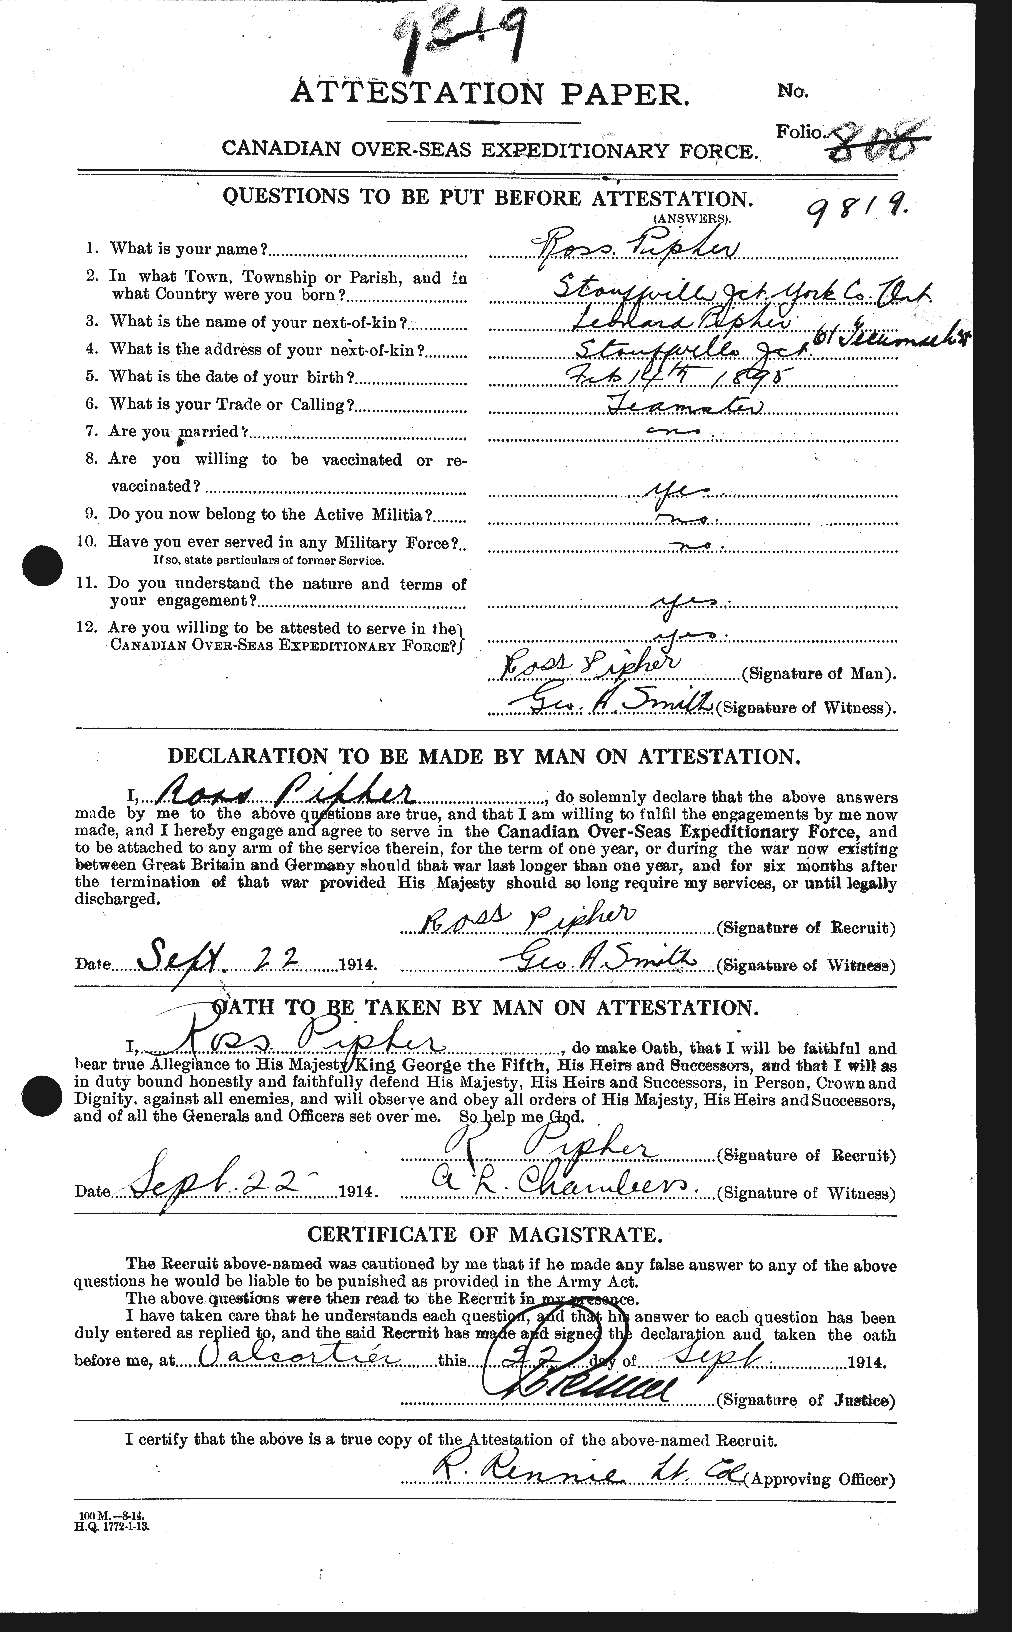 Dossiers du Personnel de la Première Guerre mondiale - CEC 582880a